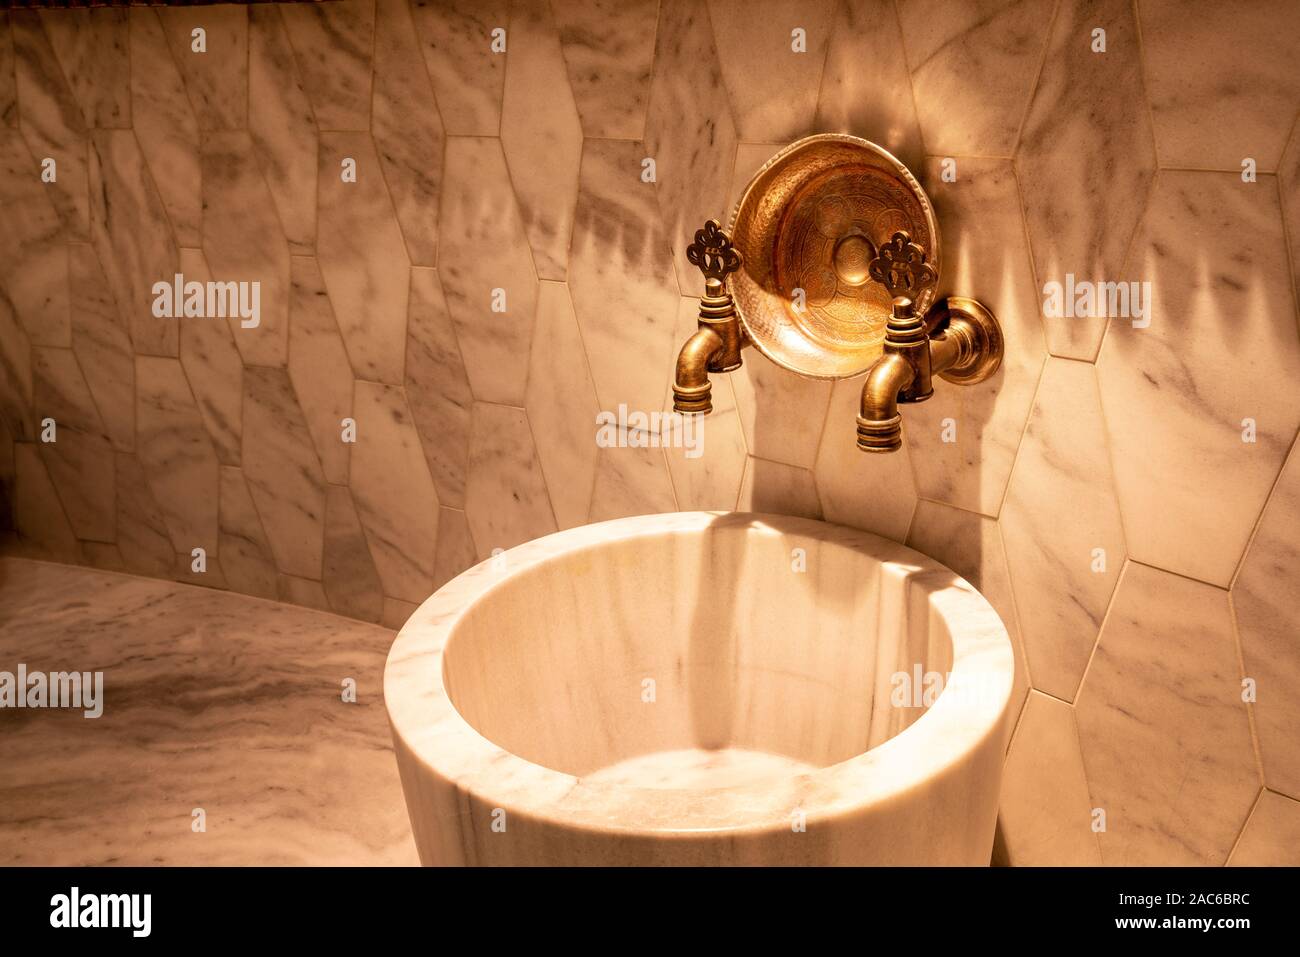 La sua architettura unica di un rubinetto del bagno che soddisfi pienamente le norme in materia di igiene Foto Stock